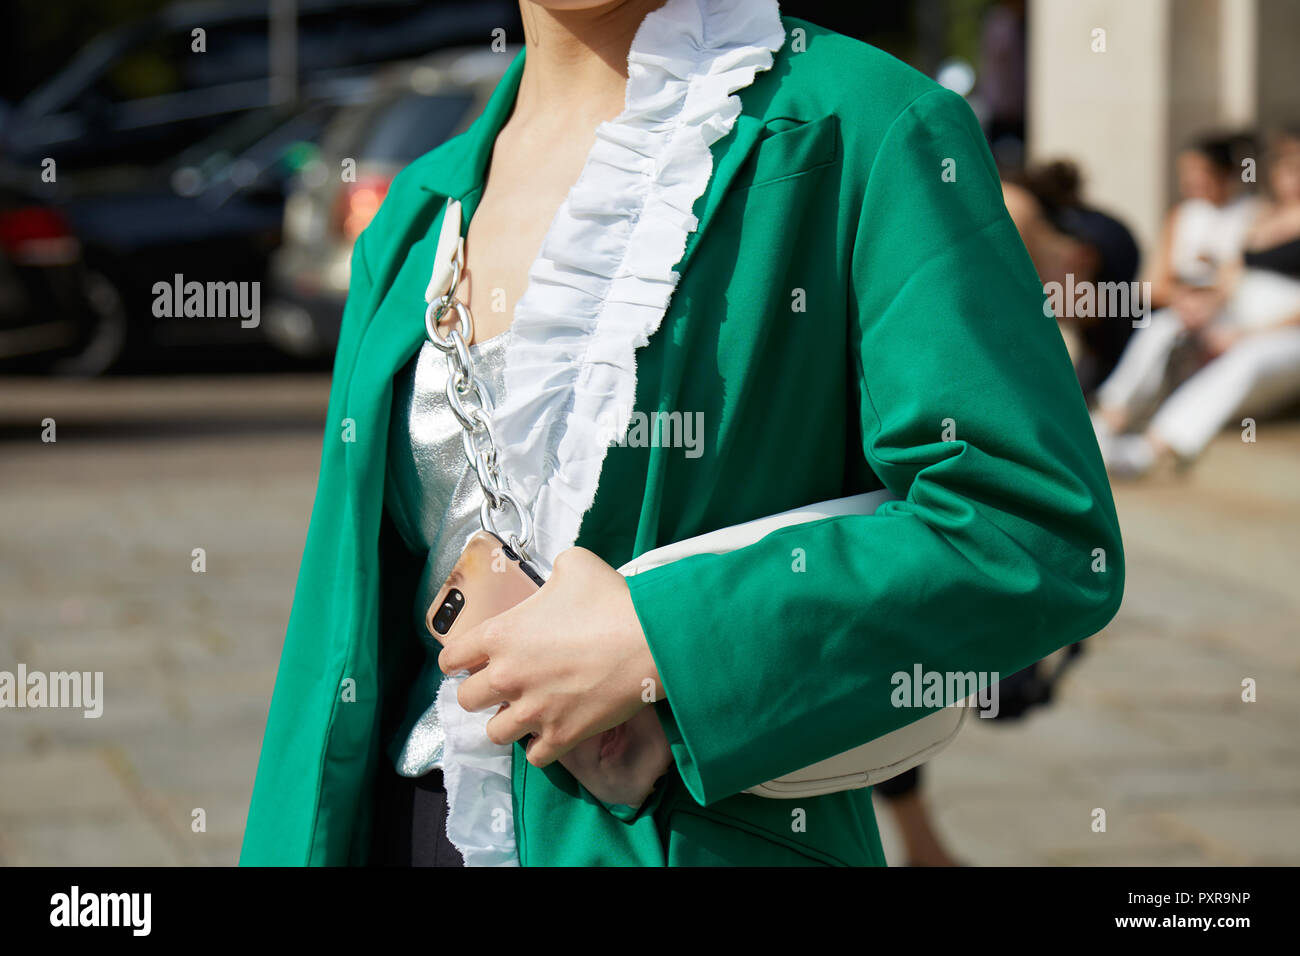 Milán, Italia - 22 septiembre de 2018: Mujer con verde y camisa blanca y